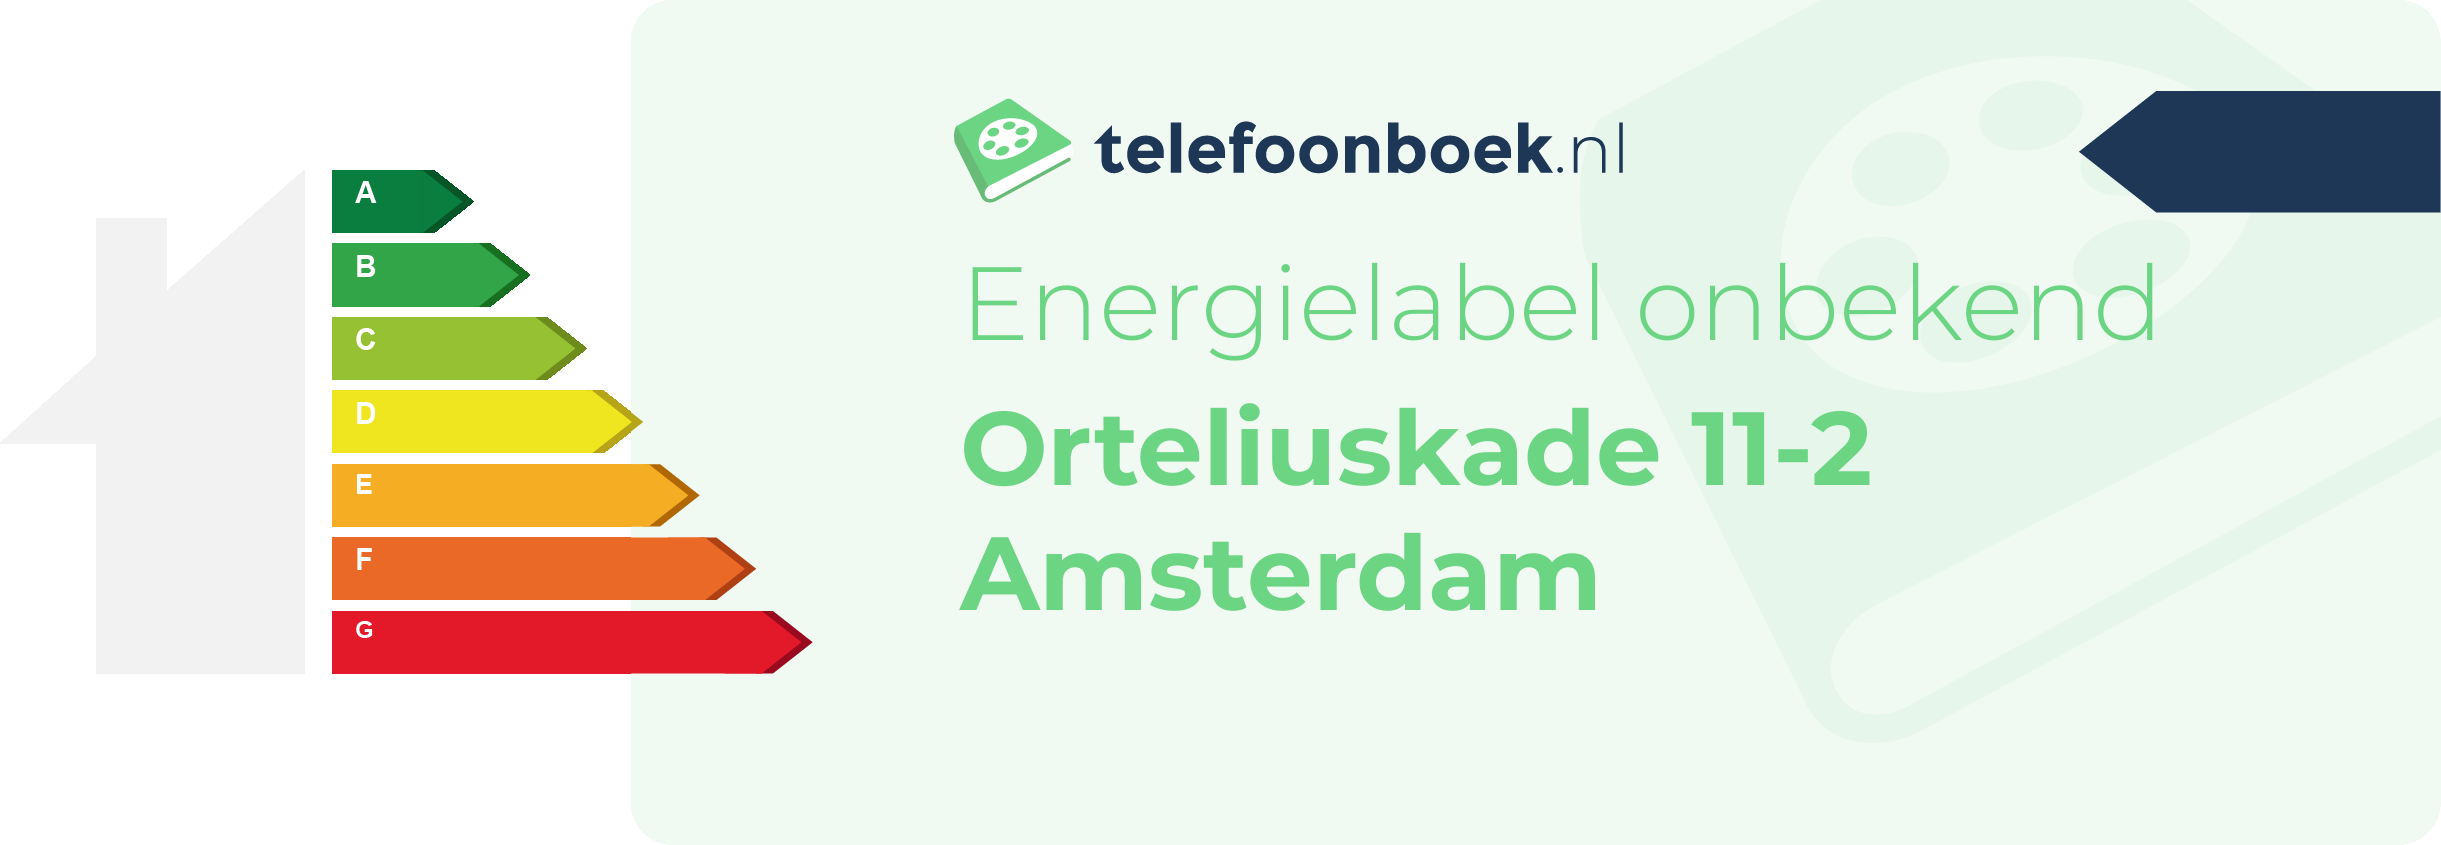 Energielabel Orteliuskade 11-2 Amsterdam